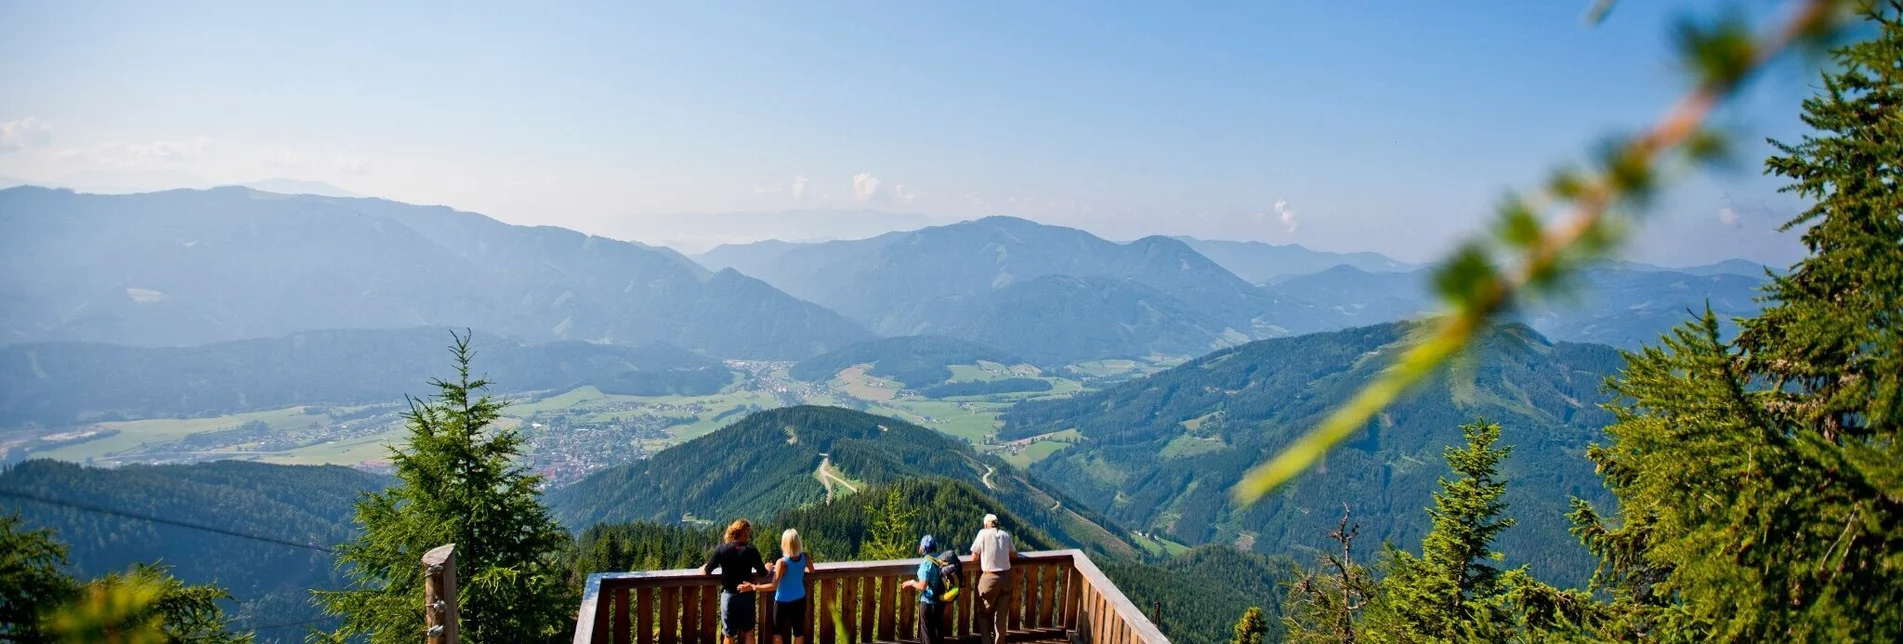 Wanderung Almenwanderung zu Gams und Edelweiss - Touren-Impression #1 | © Steiermark Tourismus